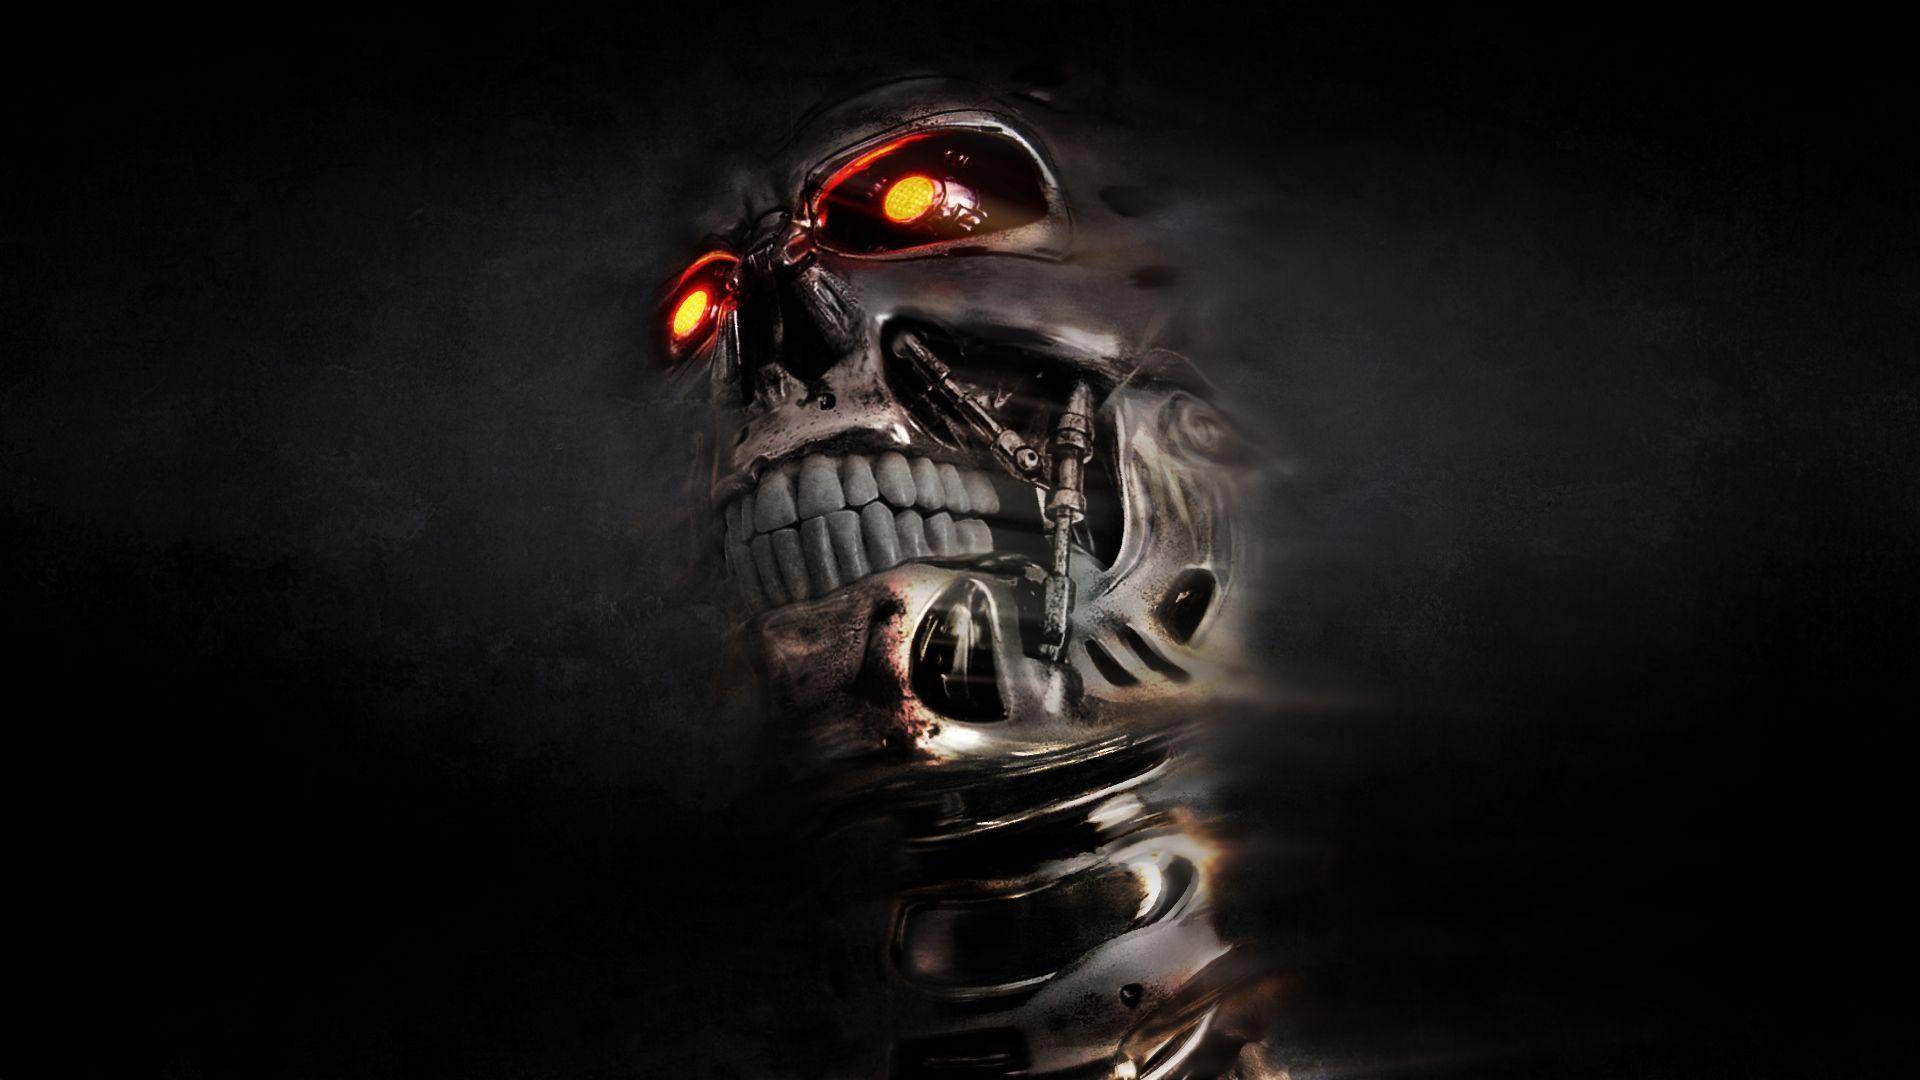 3D Skull Terminator Wallpaper. Ideas for the House